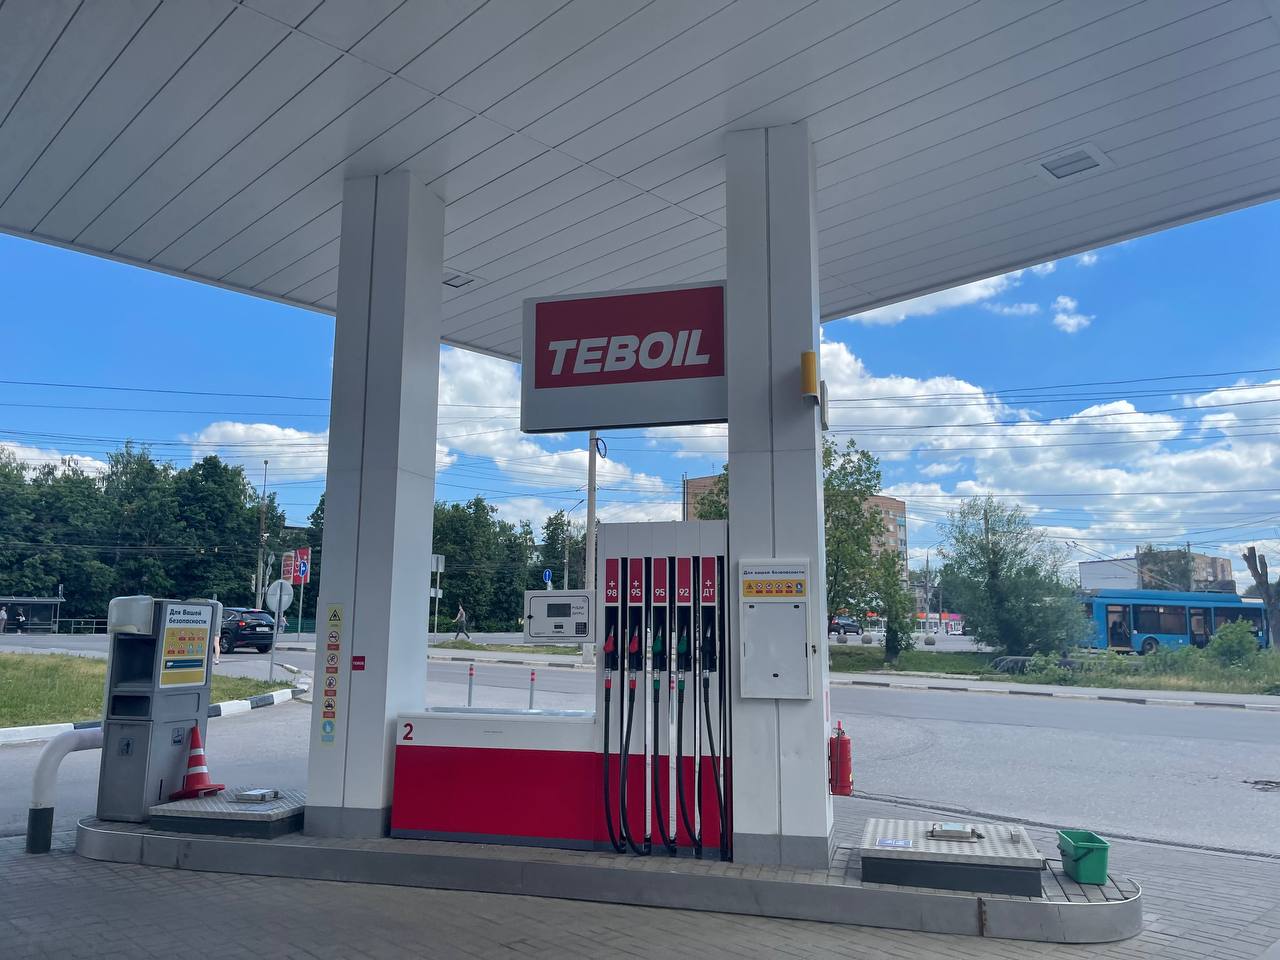 В Тульской области заправки Shell переименовали в Teboil